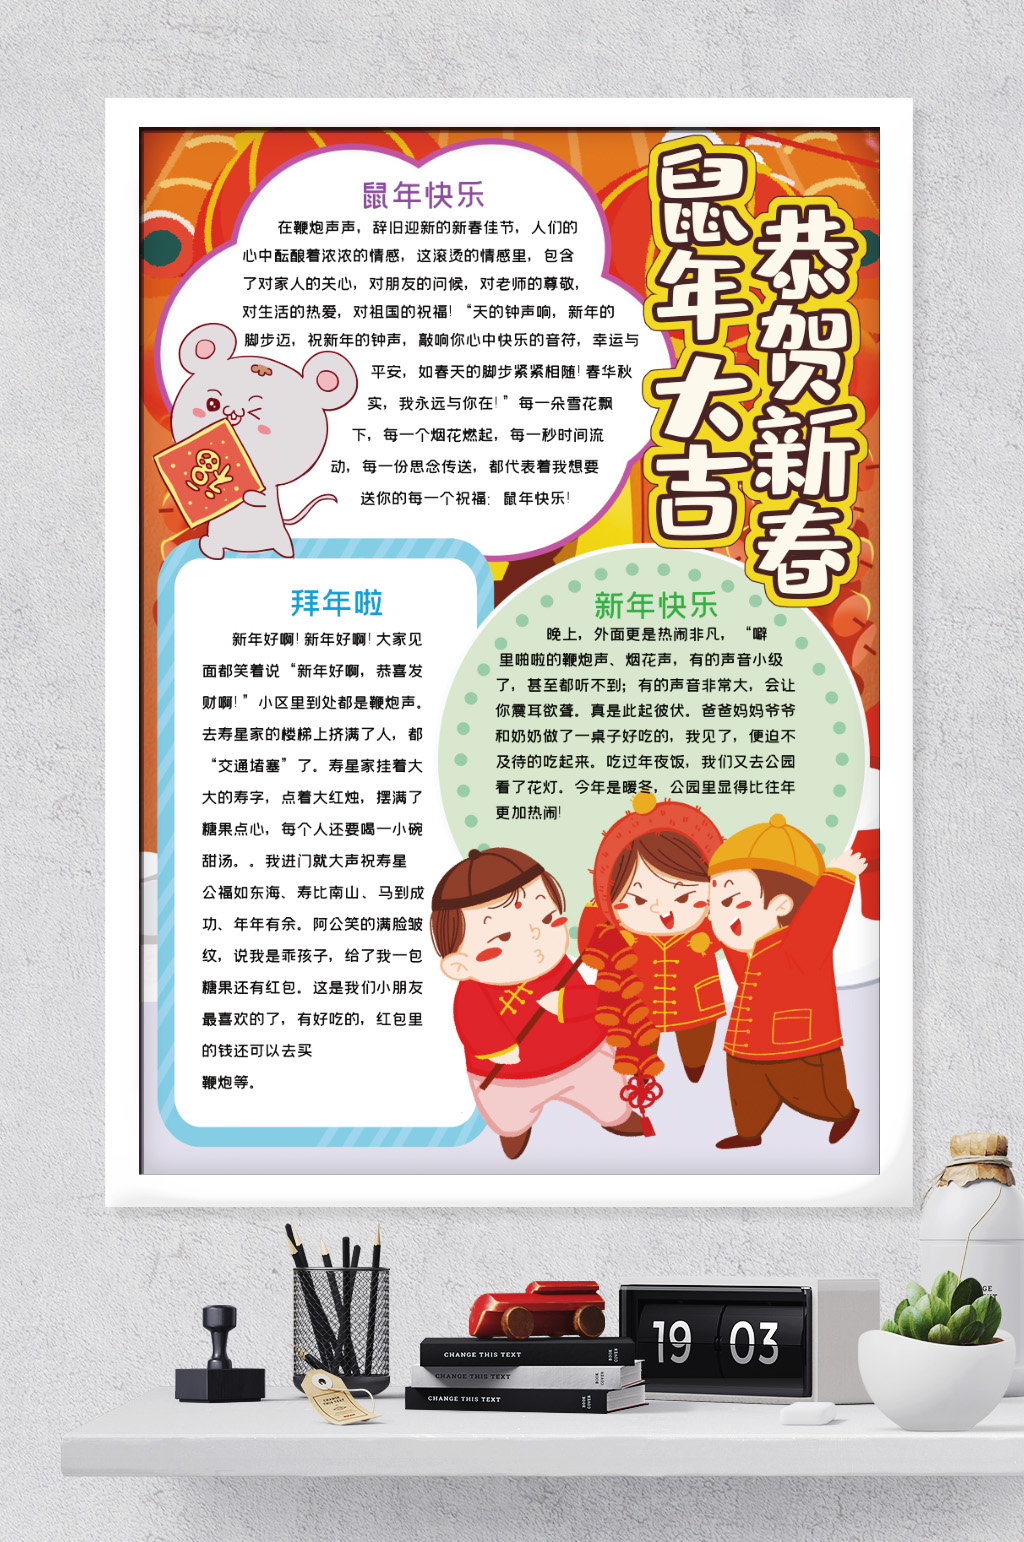 春节系列活动简报模板图片